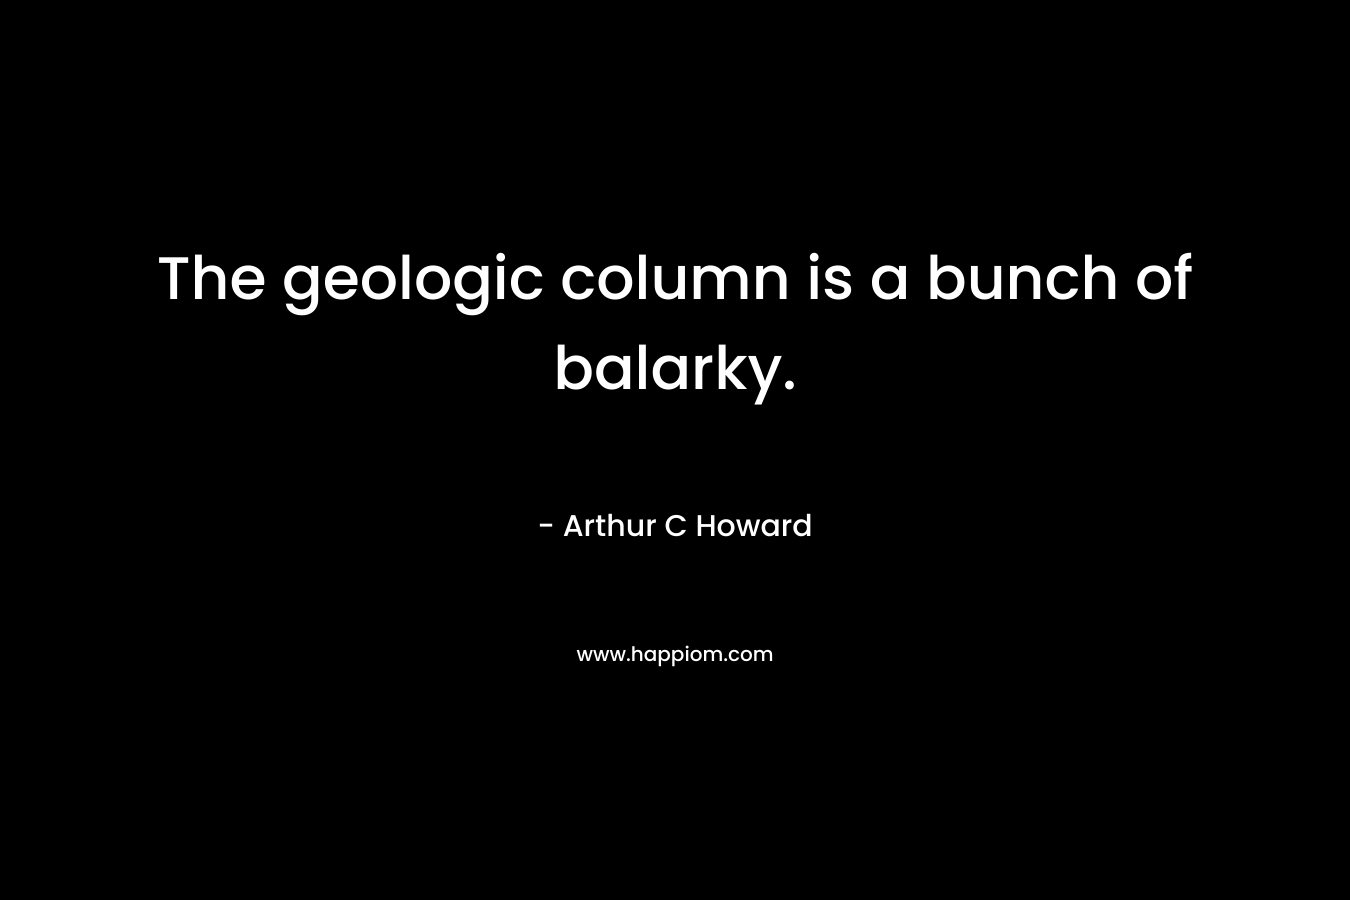 The geologic column is a bunch of balarky. – Arthur C Howard